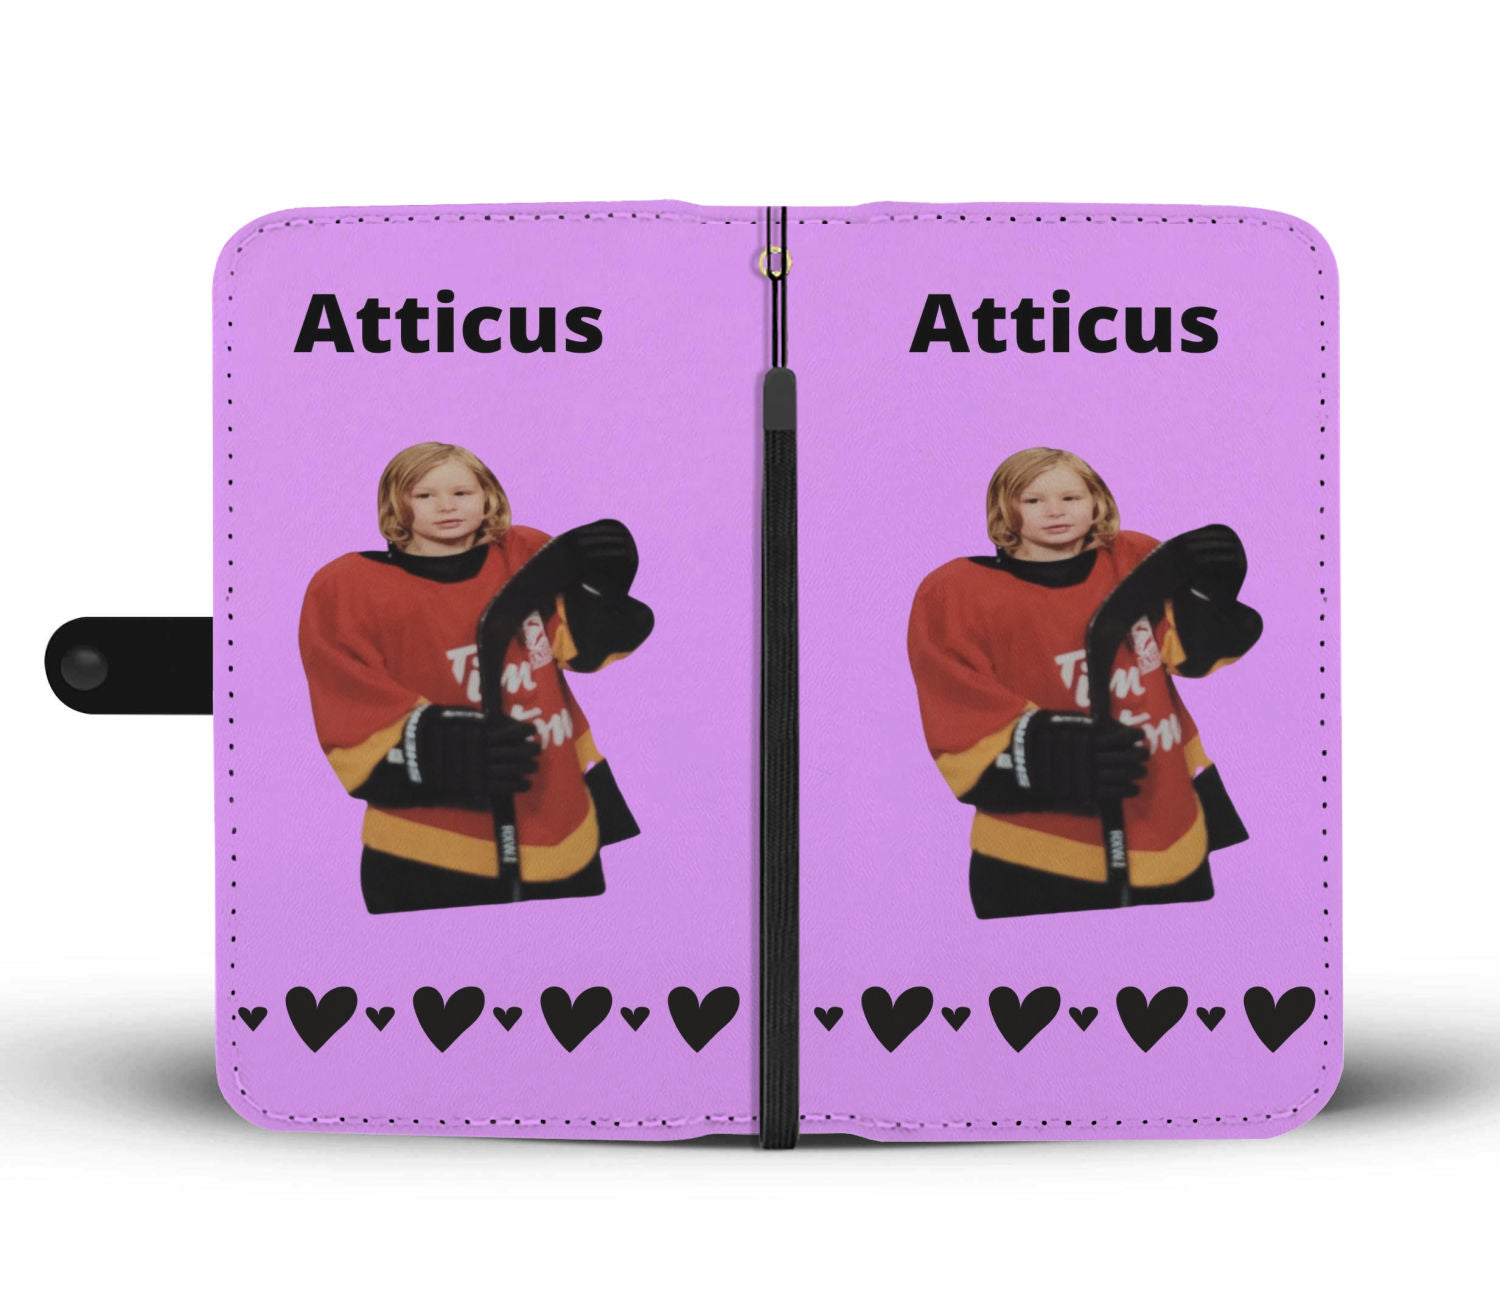 Atticus Phone Case Wallet 2